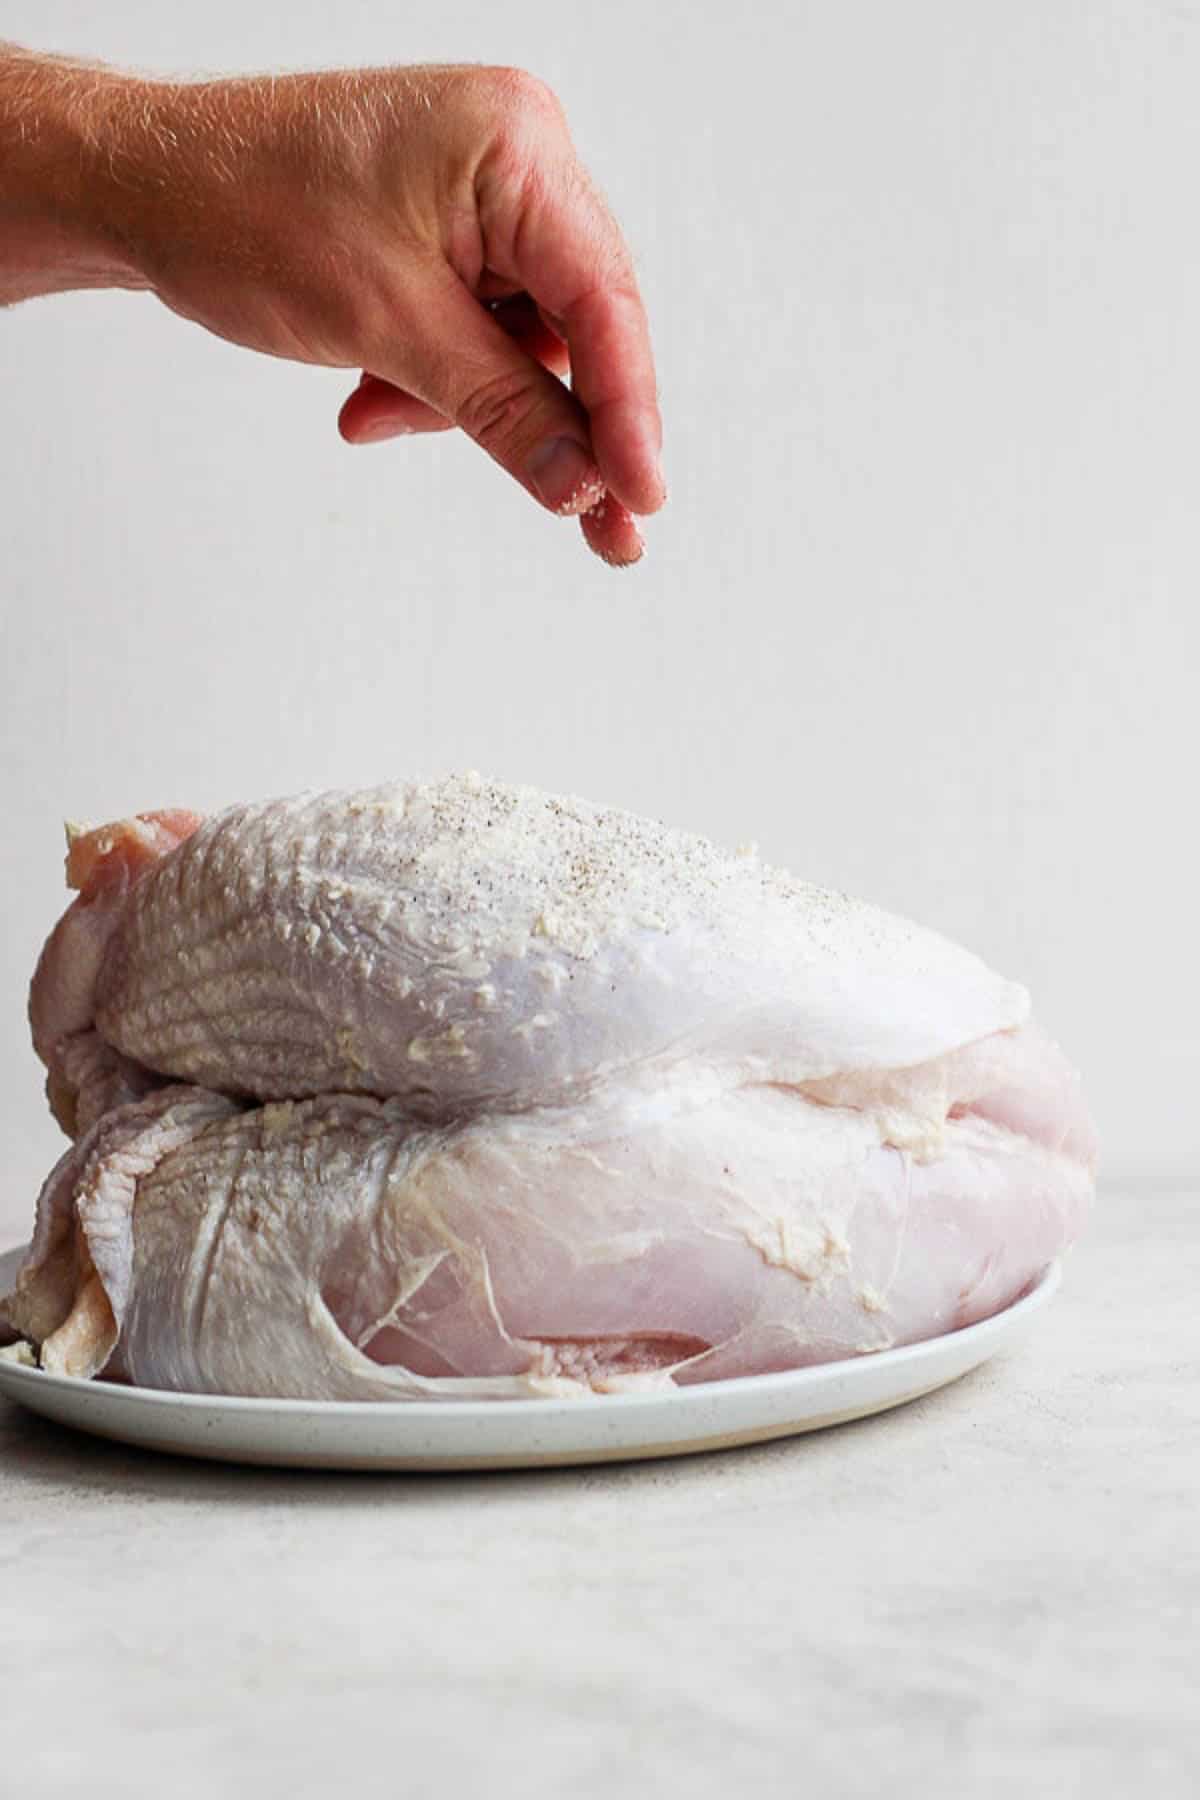 Someone sprinkling seasoning on a raw turkey breast.